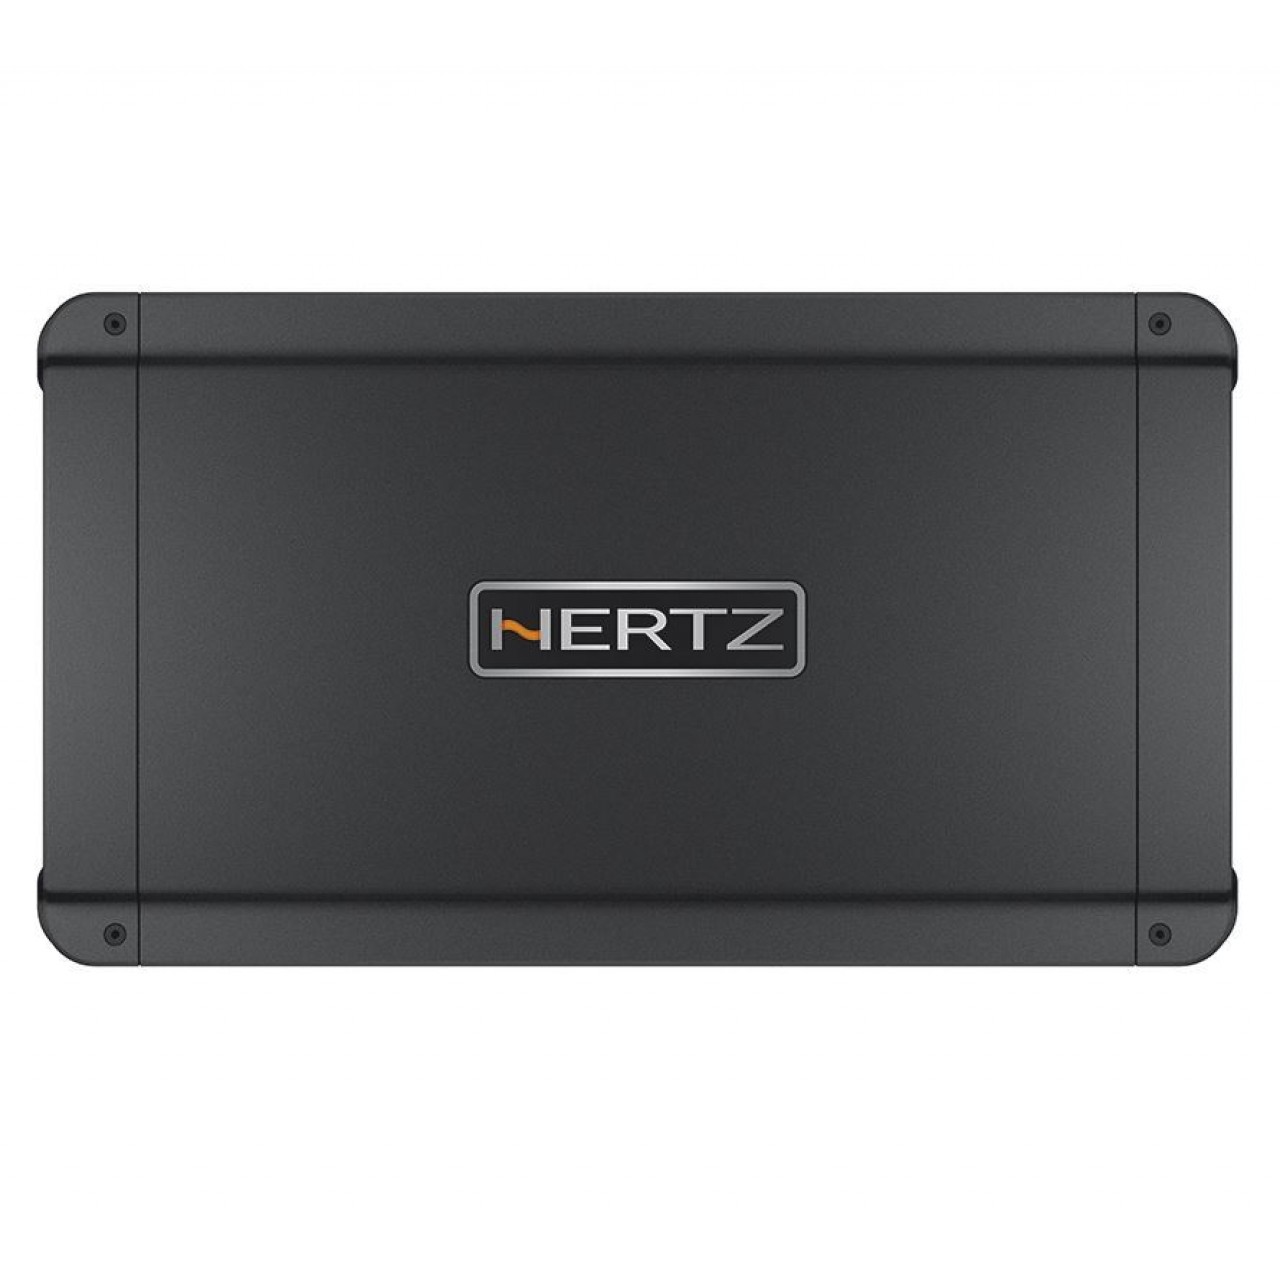 Ενισχυτής Αυτοκινήτου – Hertz Compact Power HCP 5D